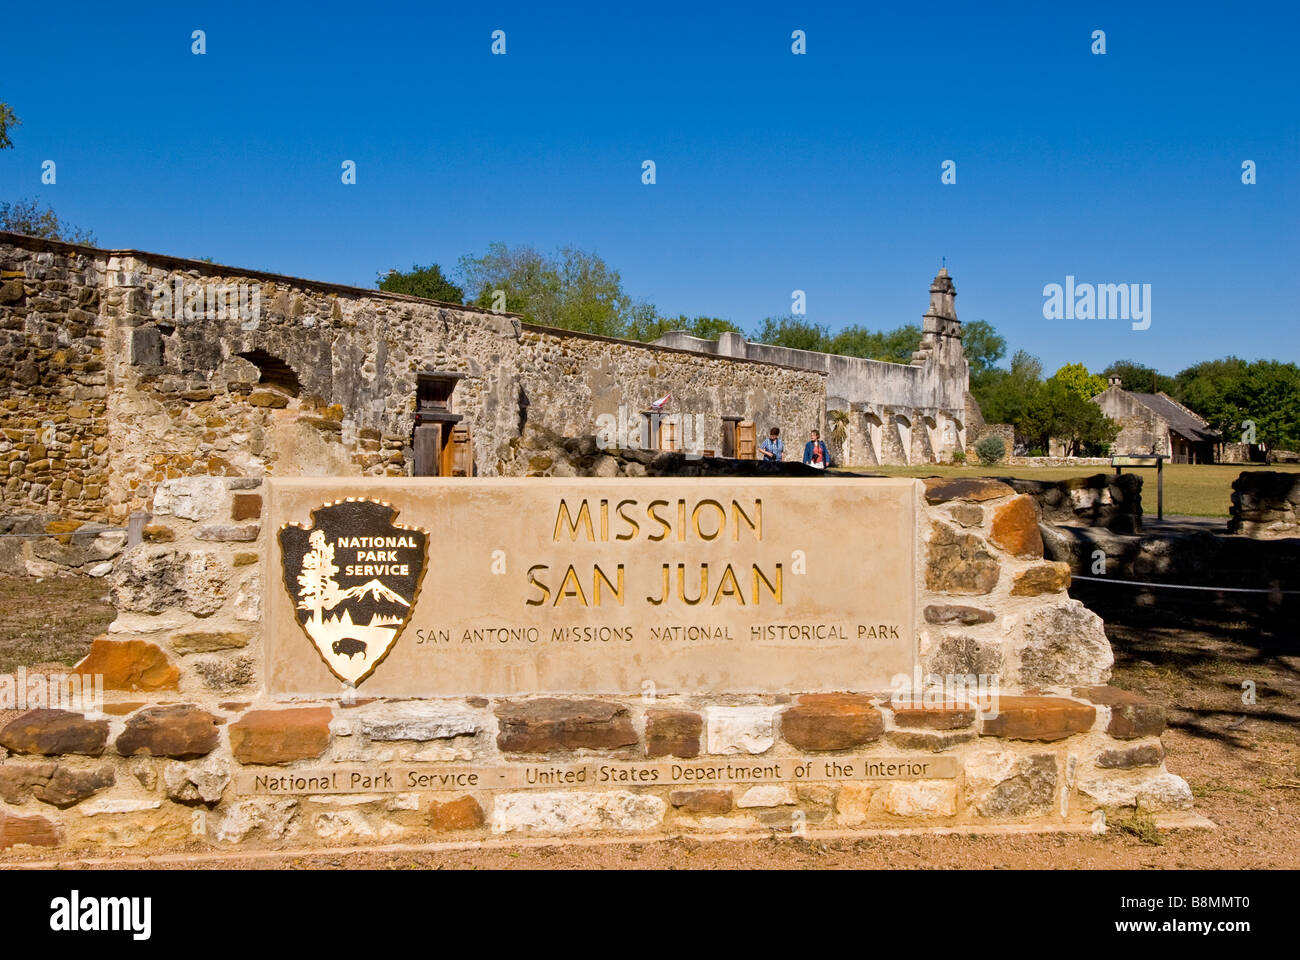 La missione di San Juan entrata segno San Antonio Missions National Historical Park us national park service destinazione turistica Foto Stock